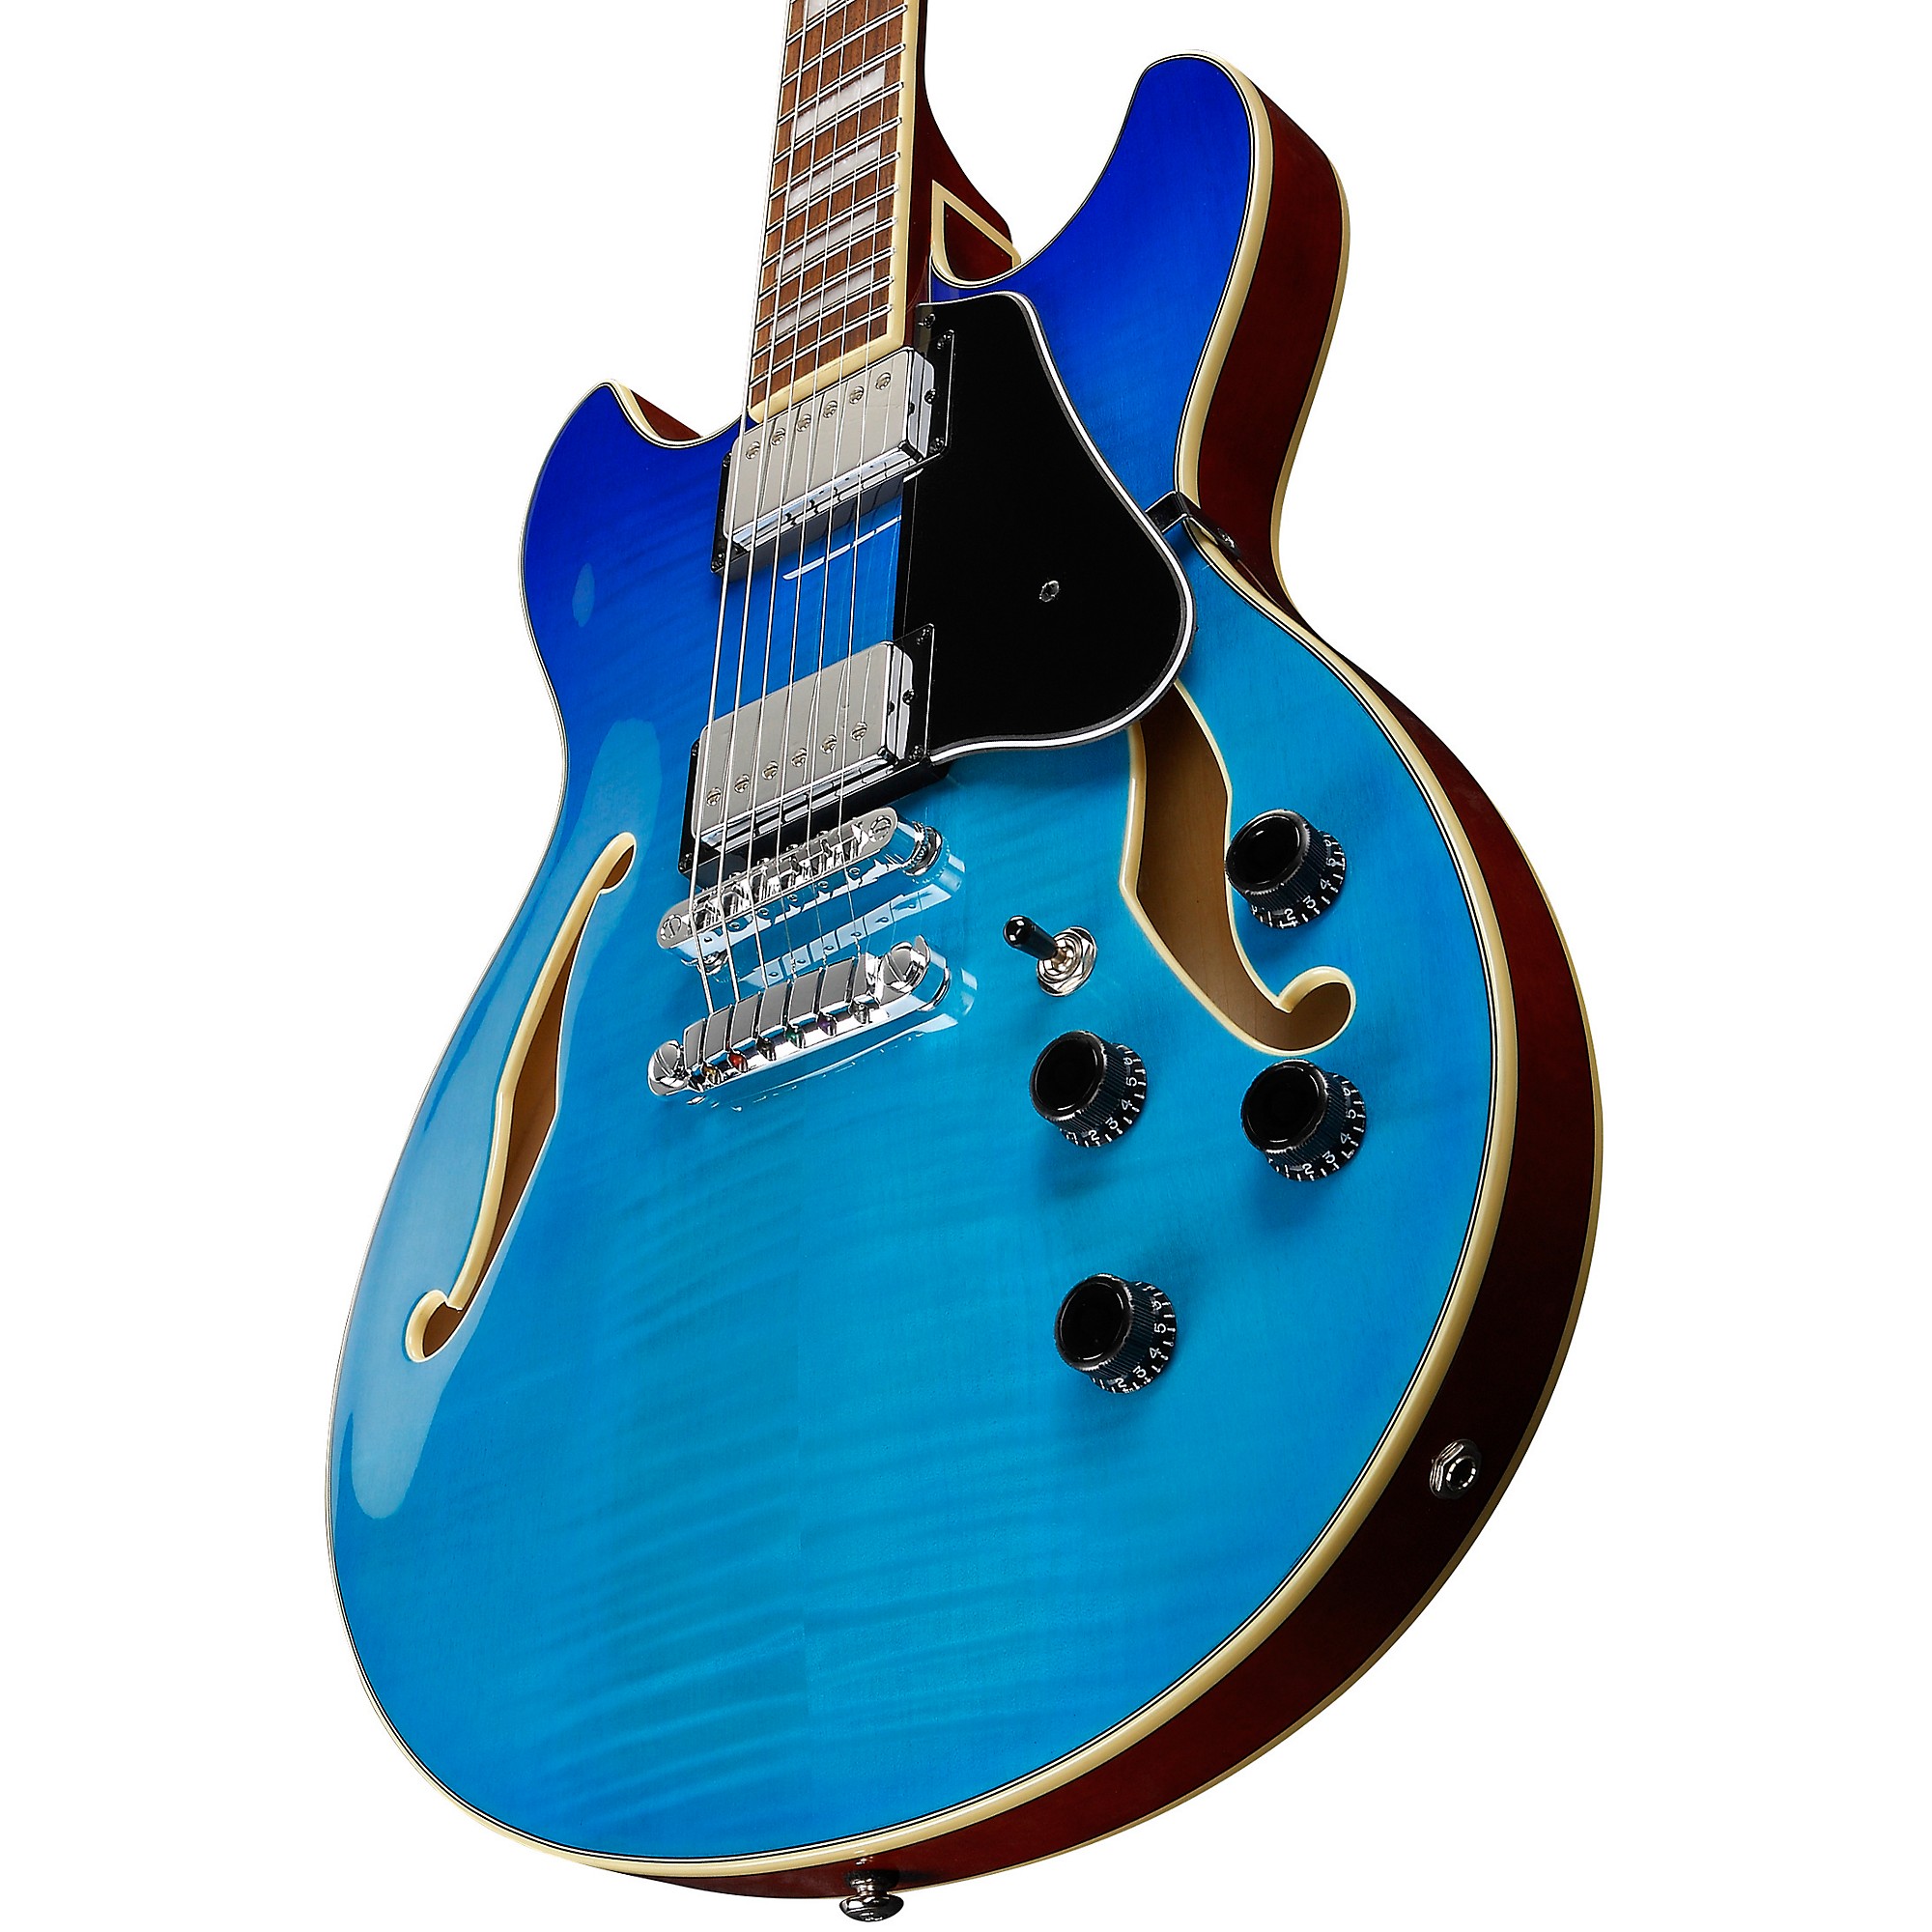 Ibanez AS73FM Artcore Semi-Hollow Electric Guitar Azure Blue Gradation